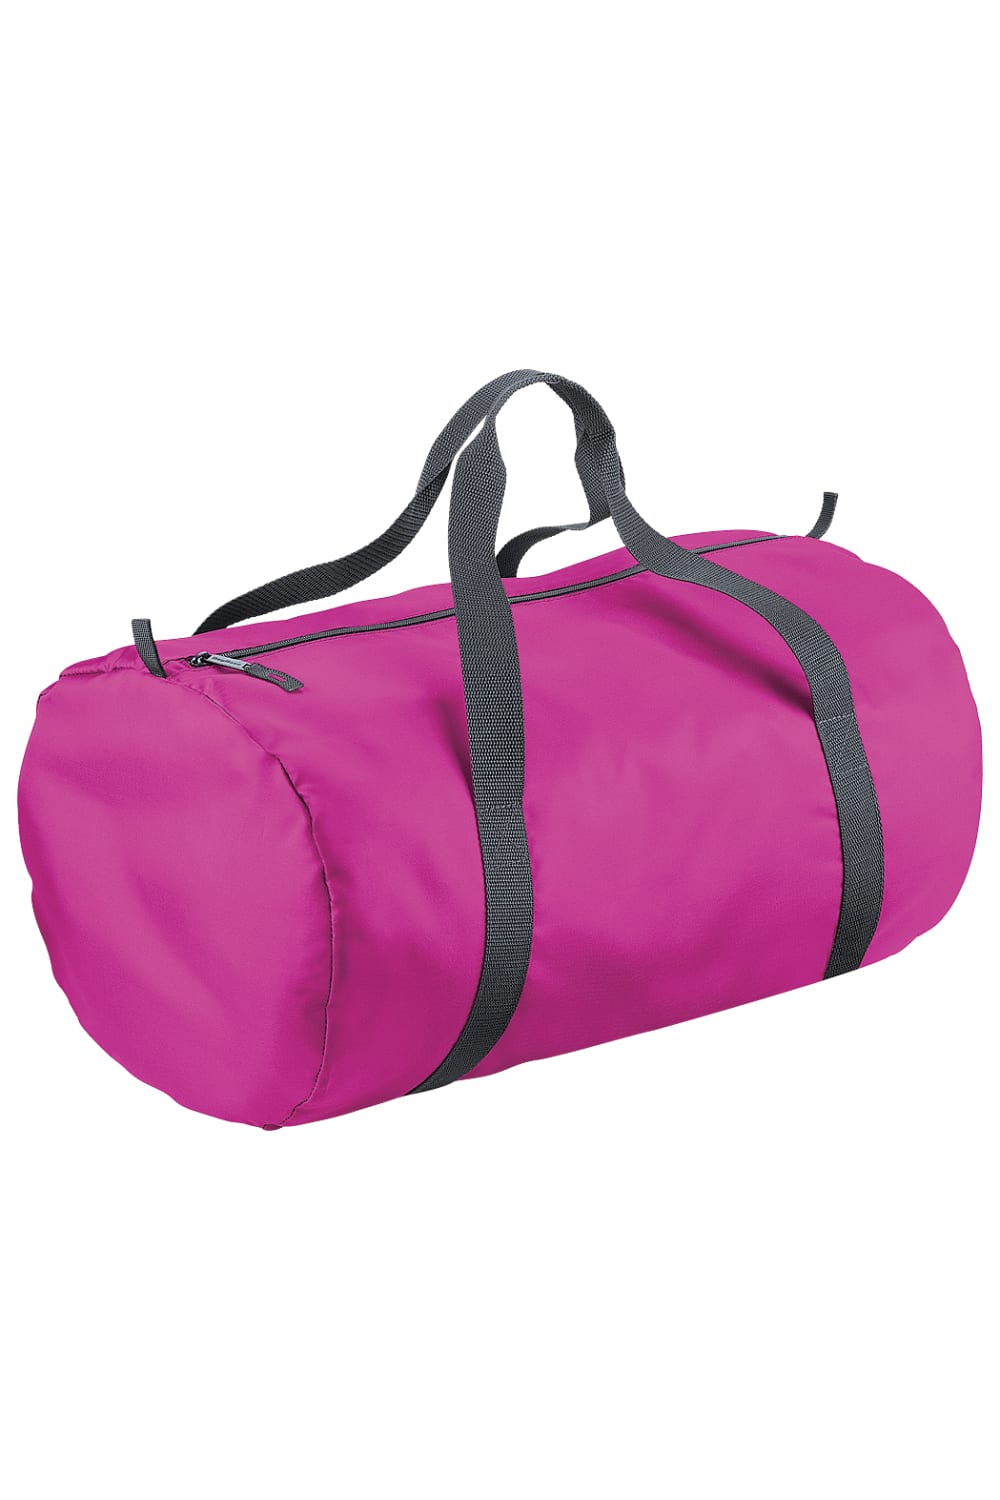 Packaway Barrel Bag/Duffel Water Resistant Travel Bag (8 Gallons) (Pack 2) - Fuchsia